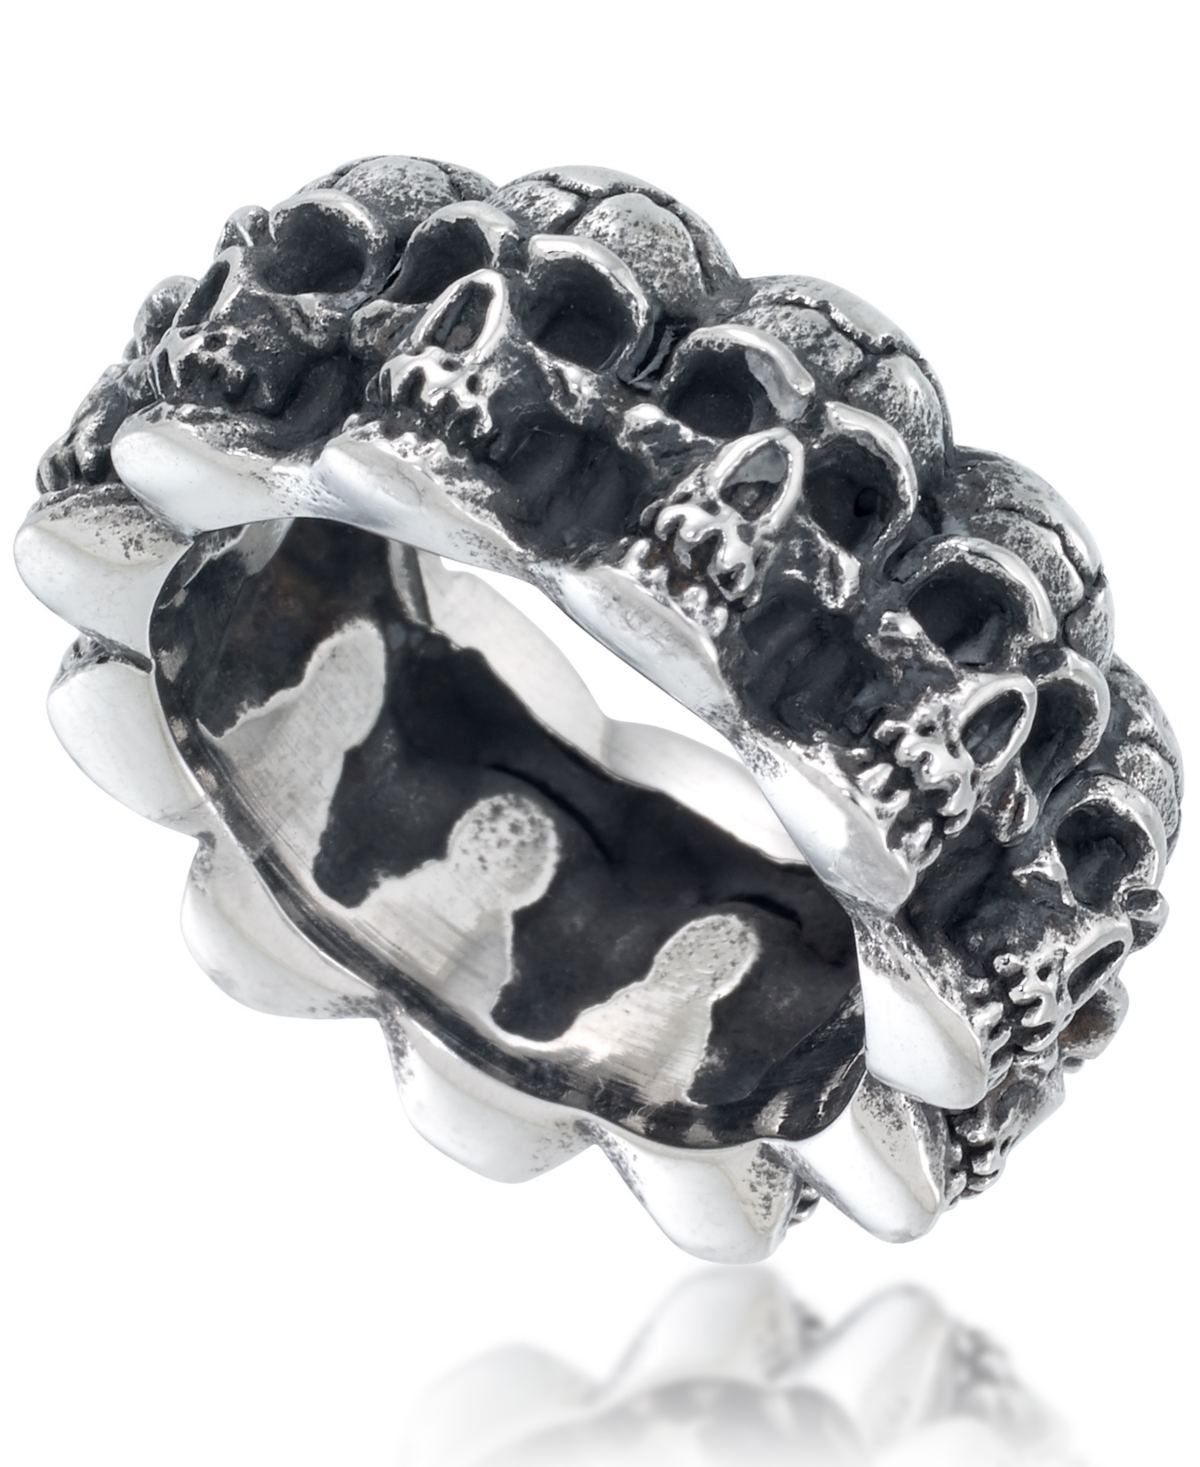 Men's Multi Skull Ring in Oxidized Stainless Steel - Stainless Steel